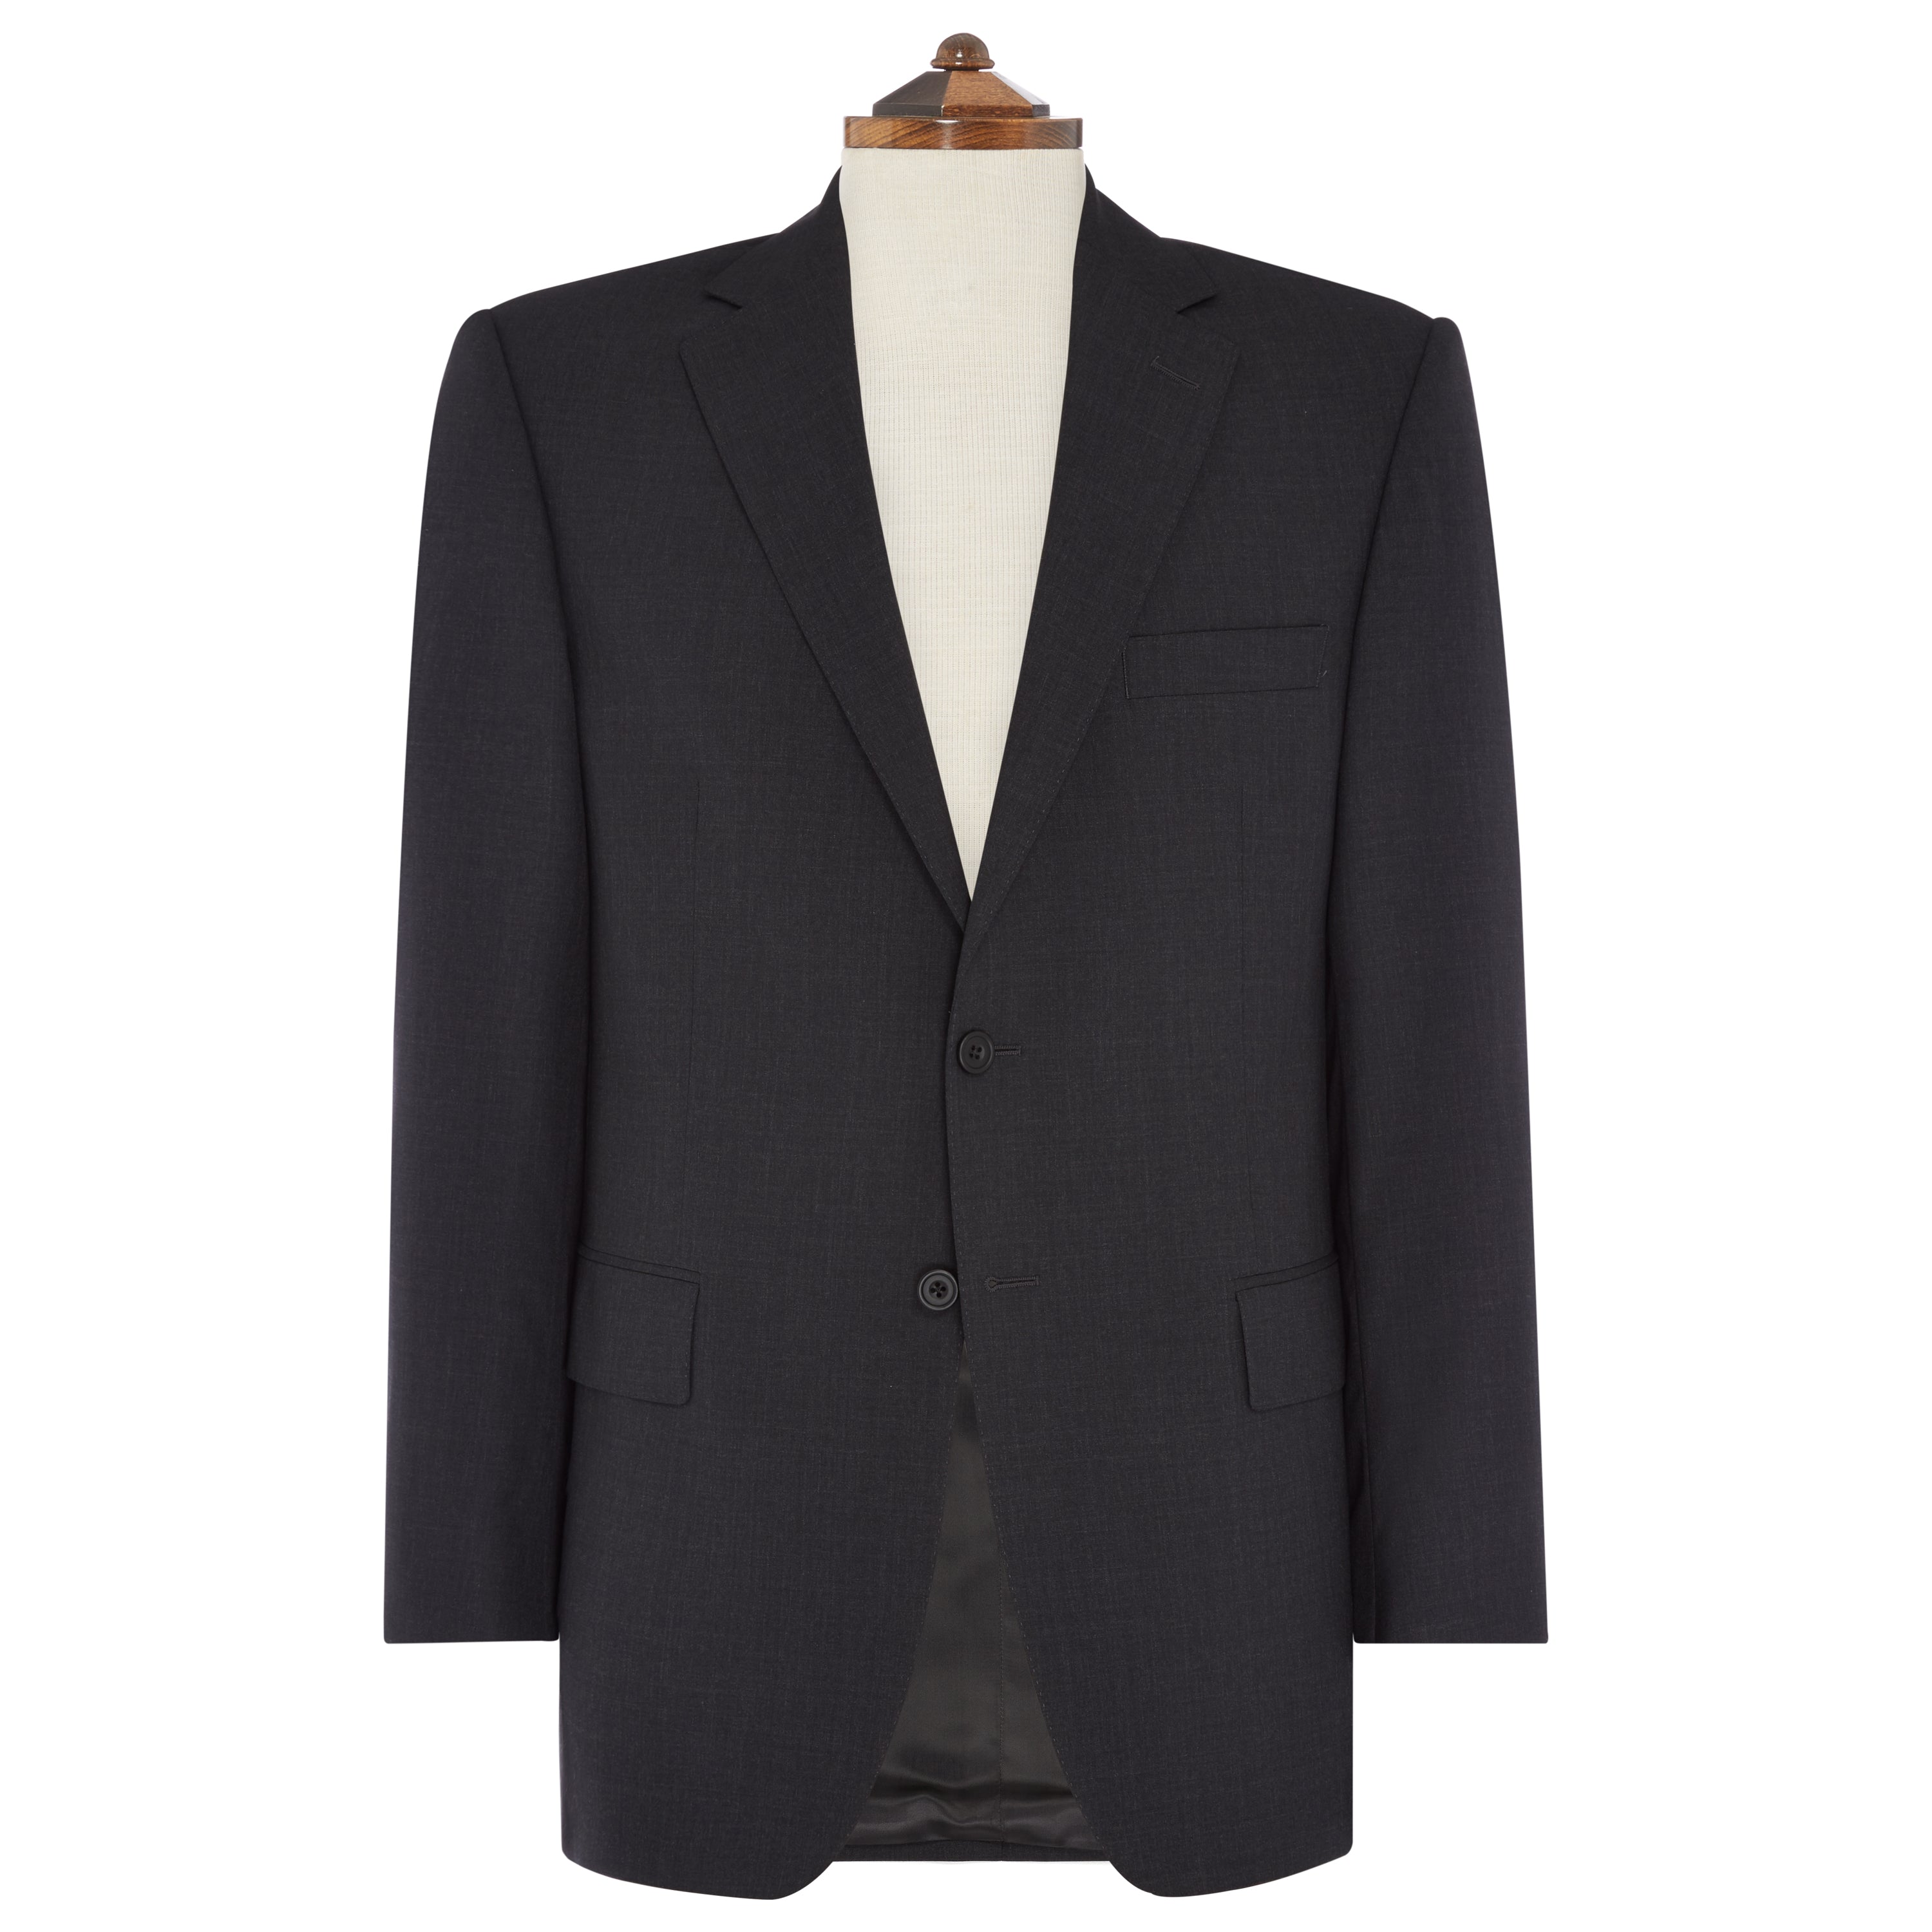 Ede & Ravenscroft - Ede & Ravenscroft | Kensington Tropical Panama Suit ...